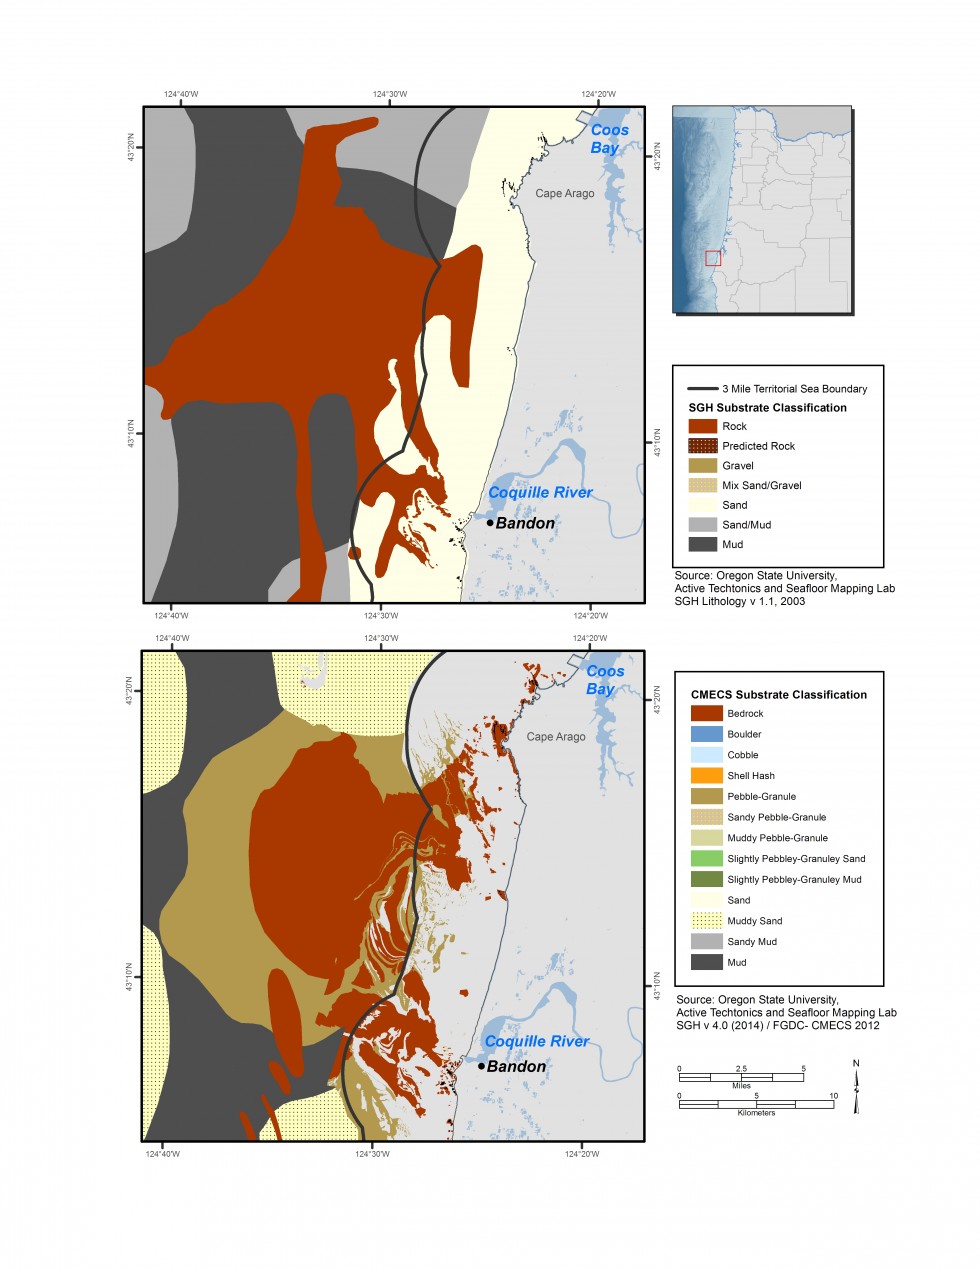 Detalle de los mapas de subtratos inferiores del Cabo Arago disponibles en 2005 y 2015